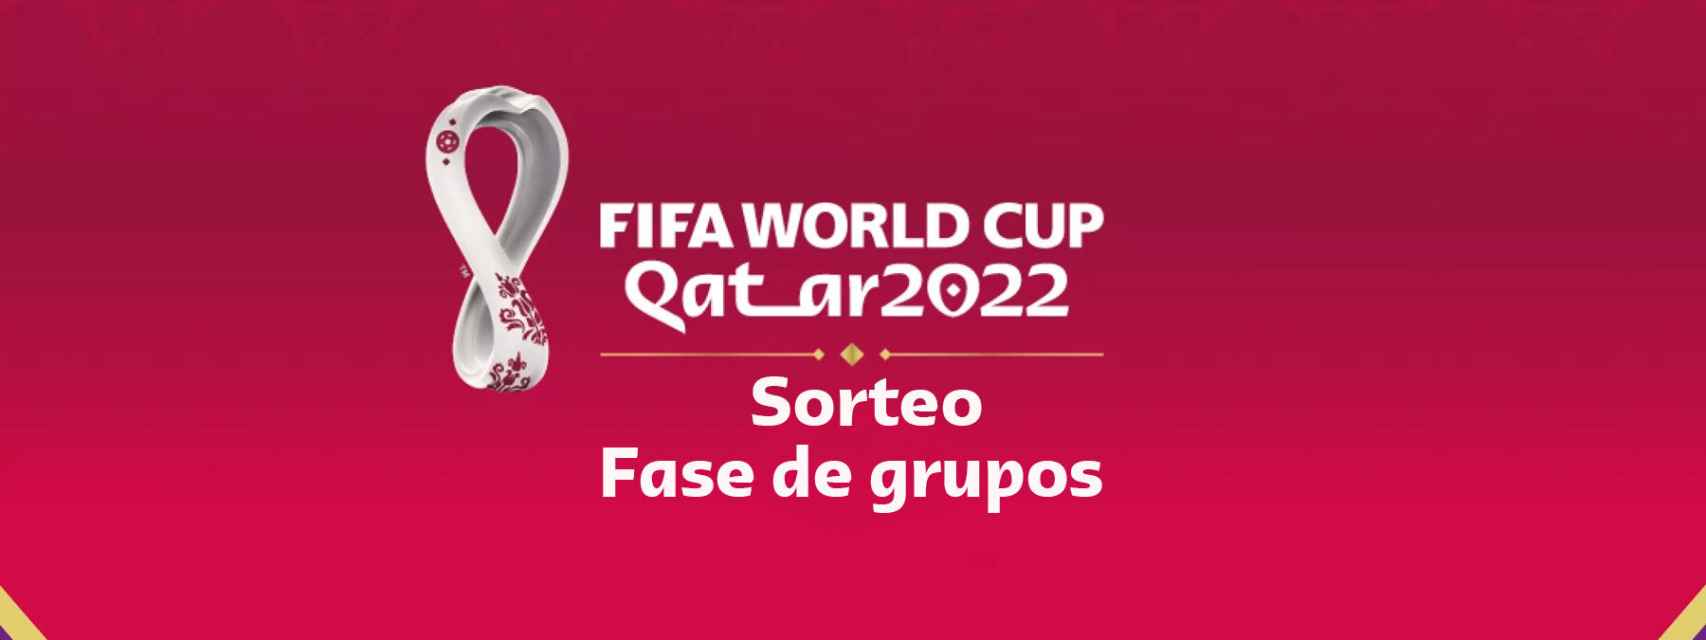 Sorteo de los grupos del Mundial de fútbol de Qatar 2022: siga en directo la ceremonia desde Doha